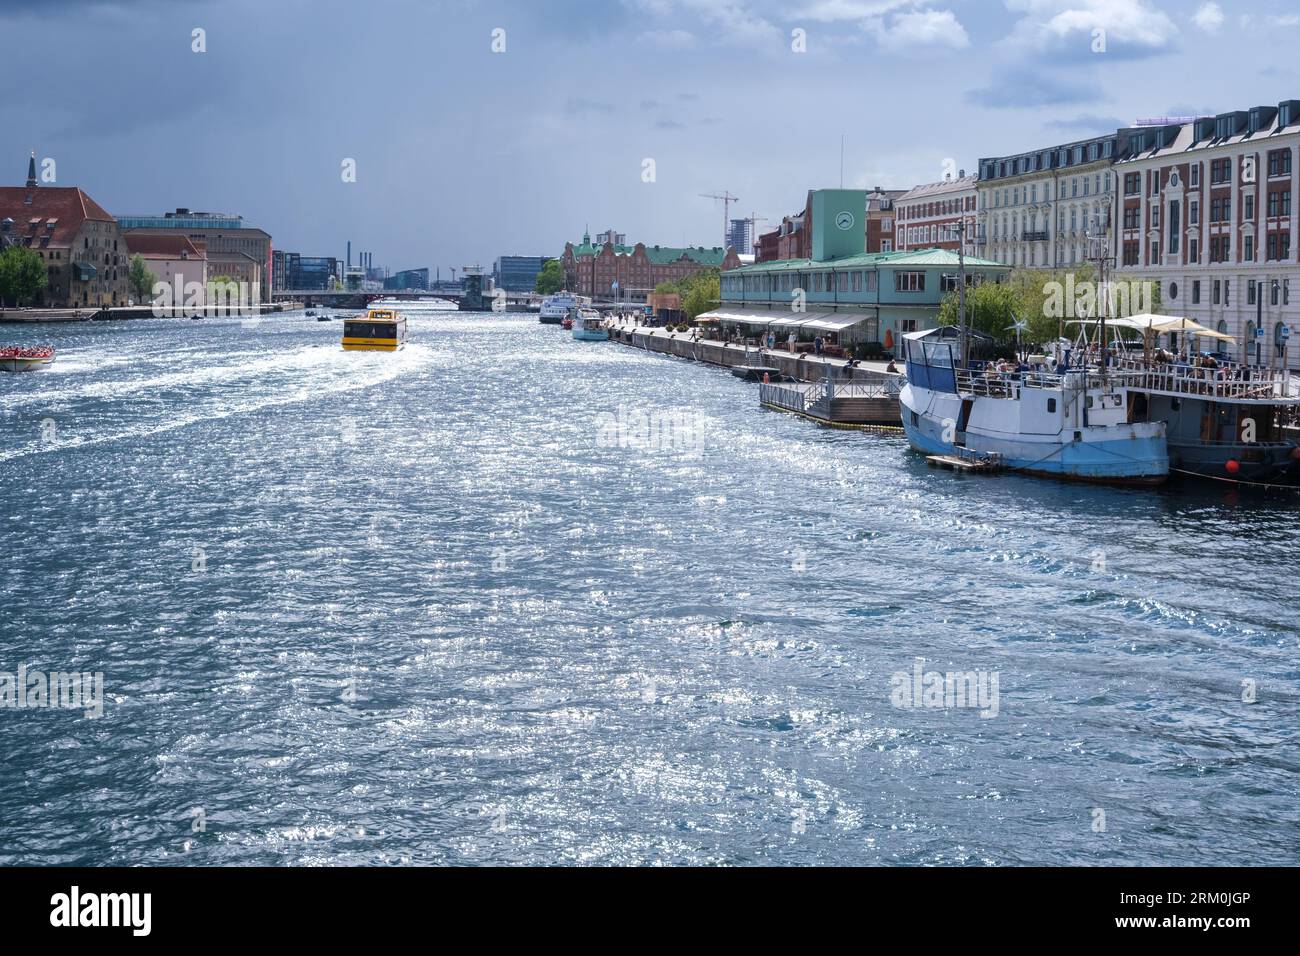 Kopenhagen, Dänemark - 8. August 2023: Touristen fahren auf großen überfüllten Lastkähnen durch die Kanäle von Kopenhagen. Stockfoto